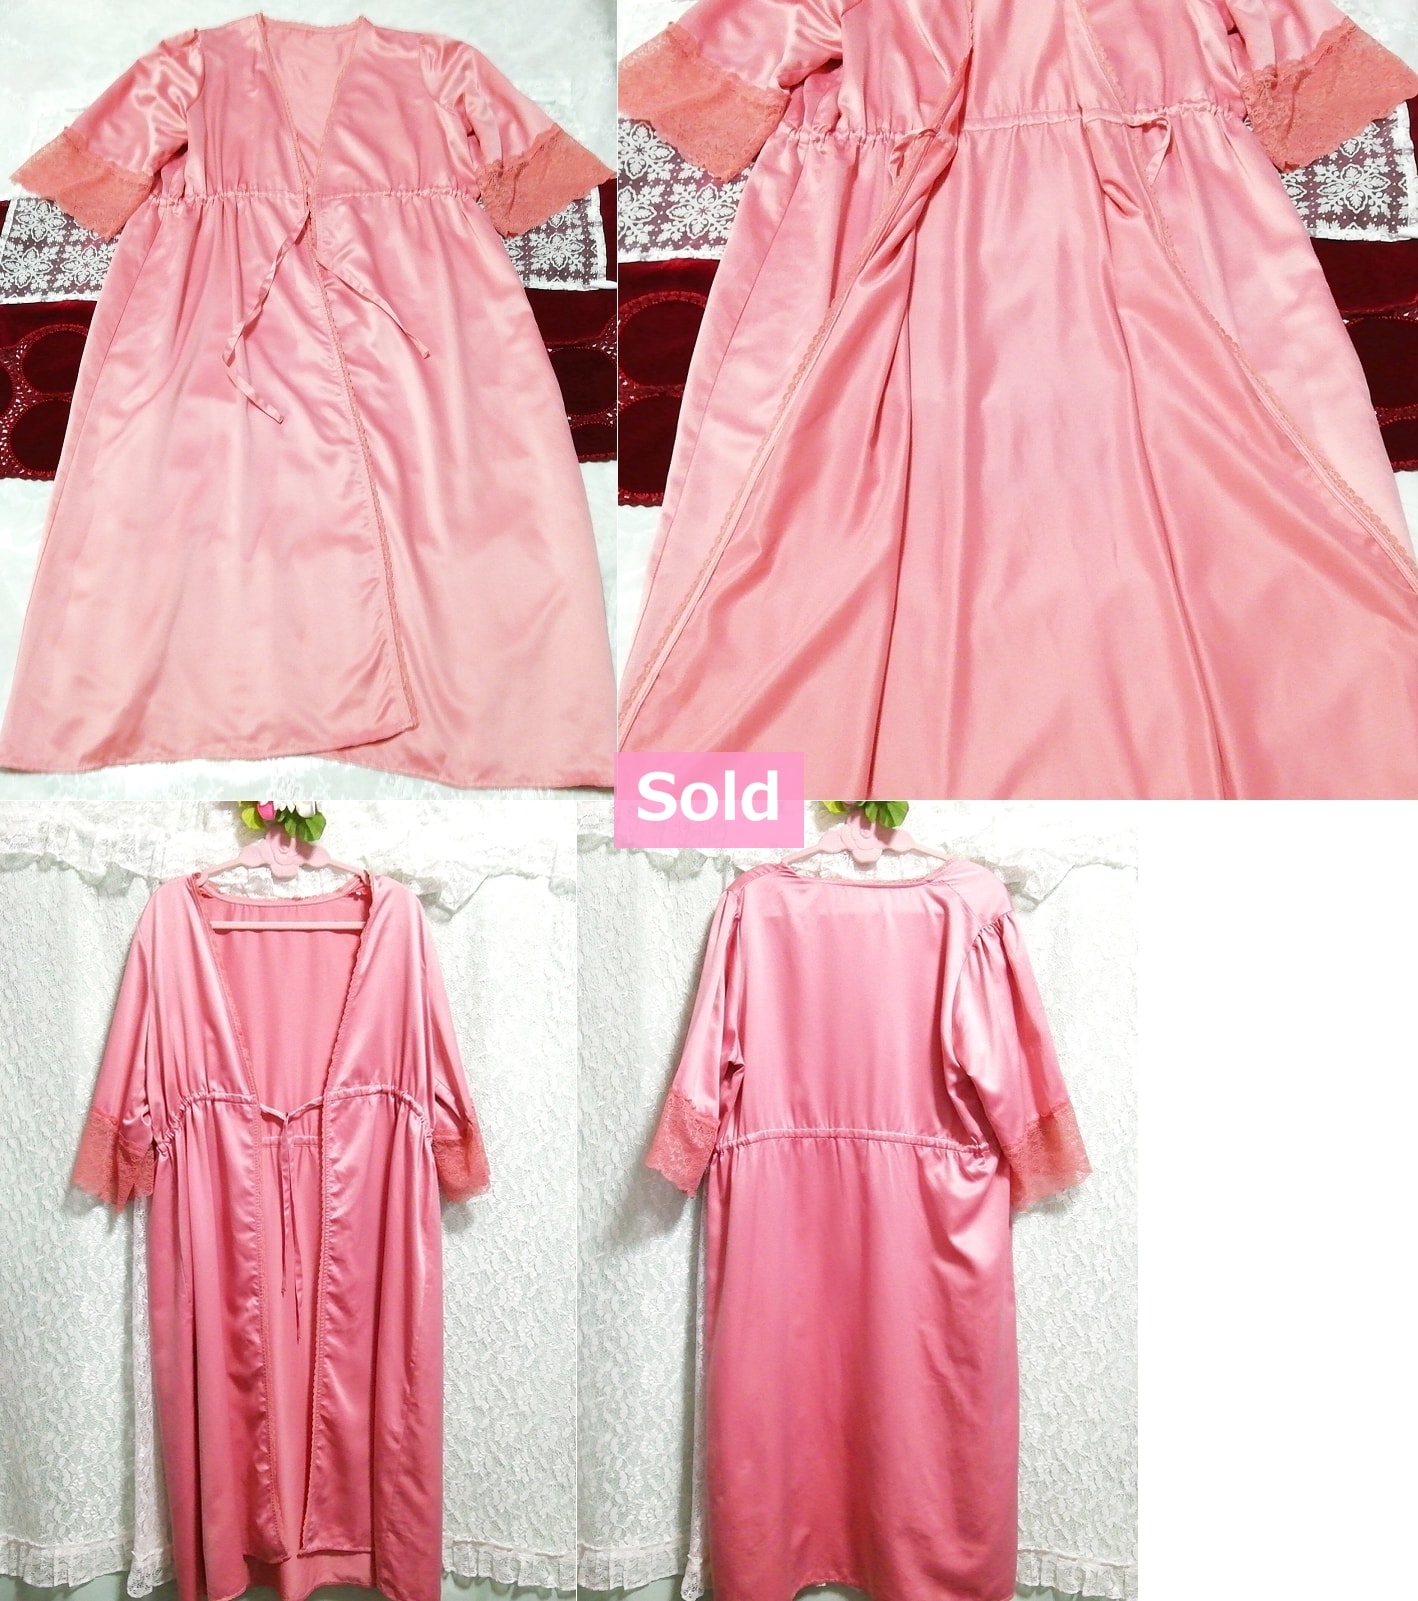 粉色缎面超长睡衣罩衫长袍连体连衣裙, 时尚, 女士时装, 睡衣